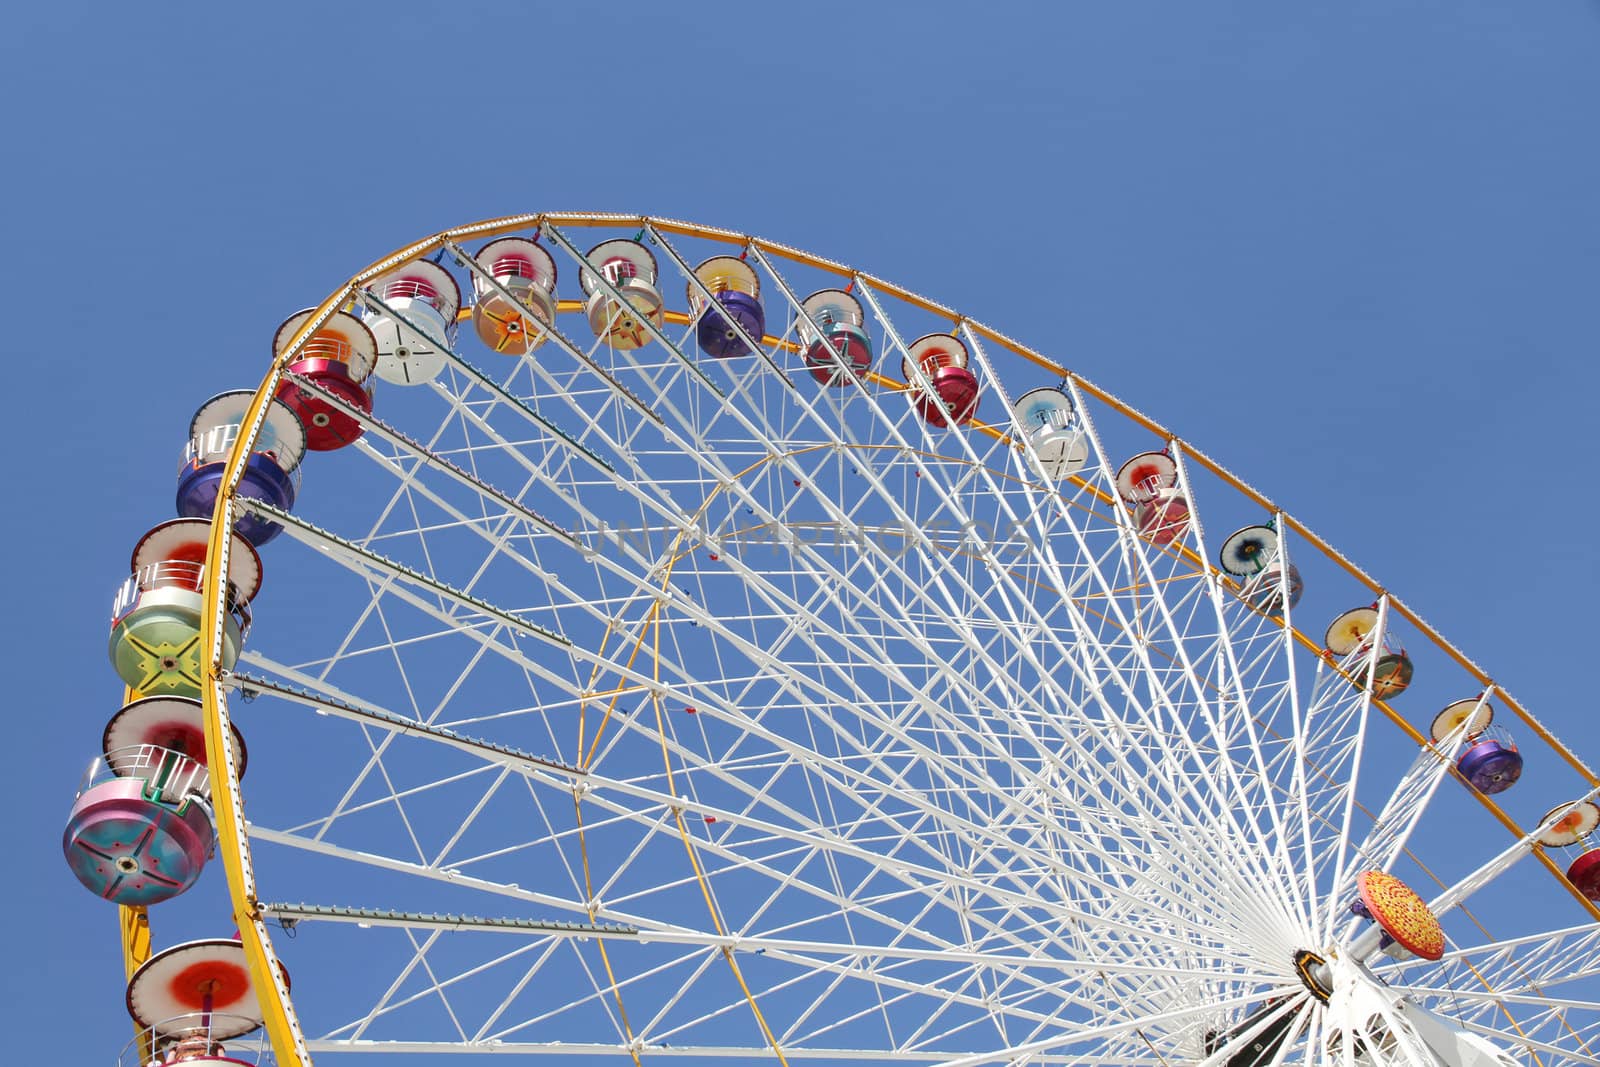 Ferris wheel in an amusement park by daboost